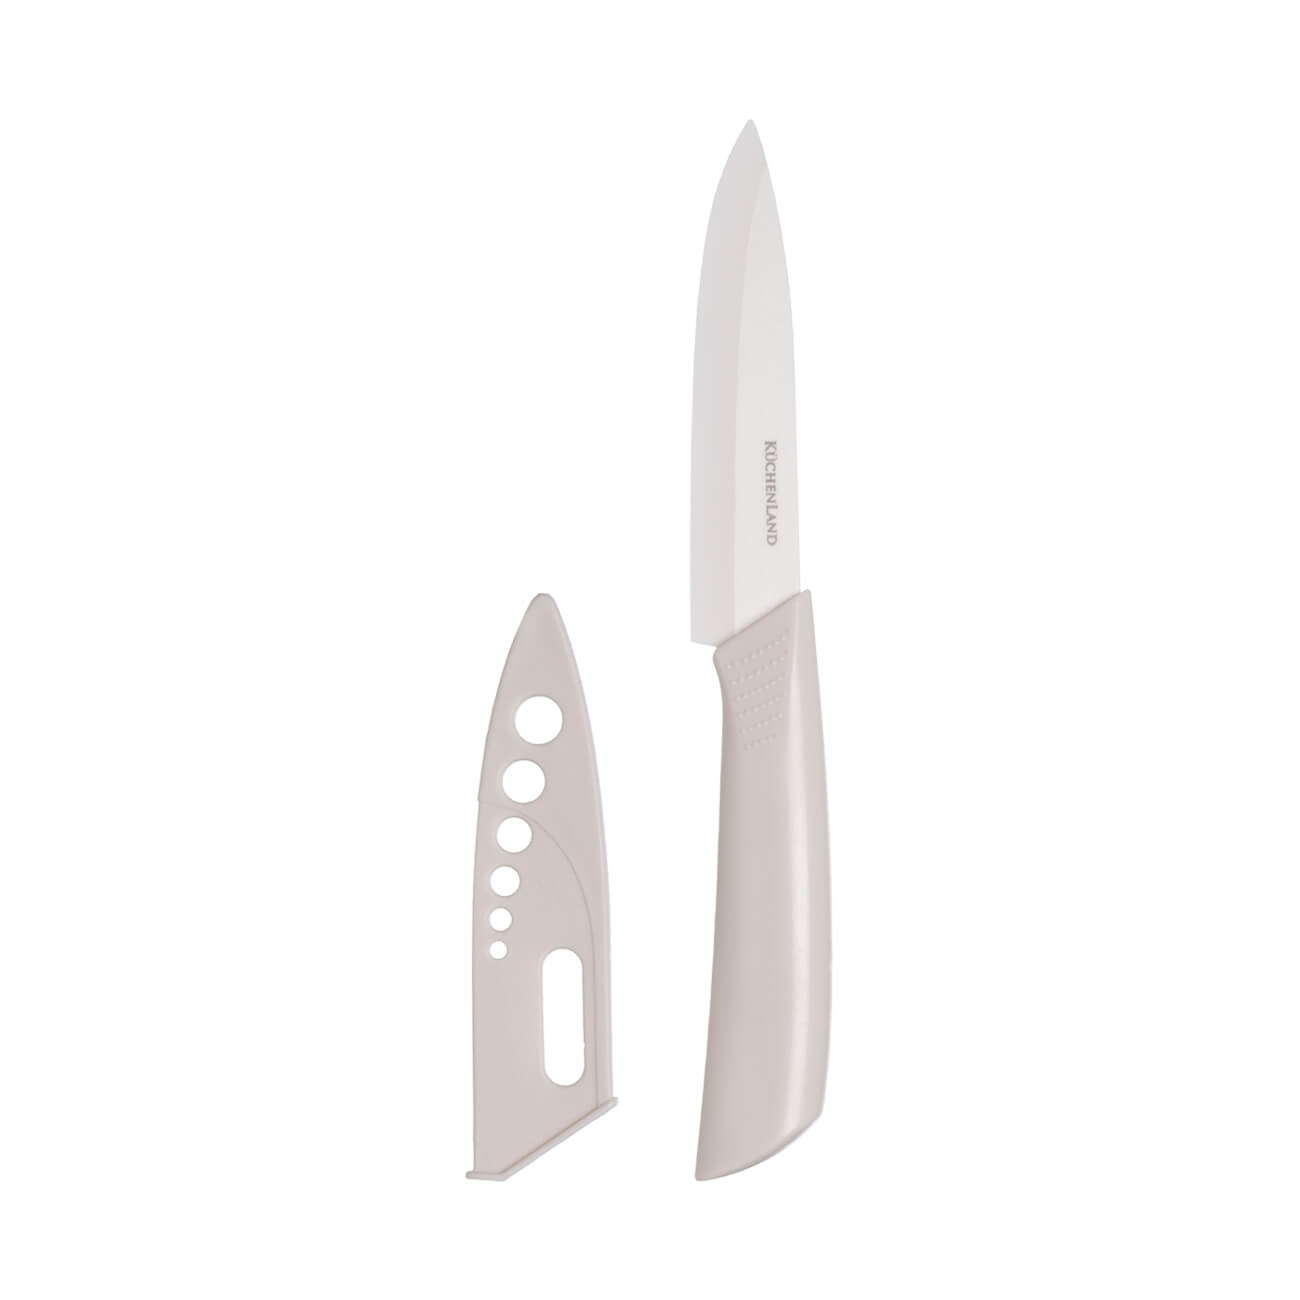 Нож для чистки овощей, 10 см, с чехлом, керамика/пластик, молочный, Regular нож для чистки овощей essential k2210575